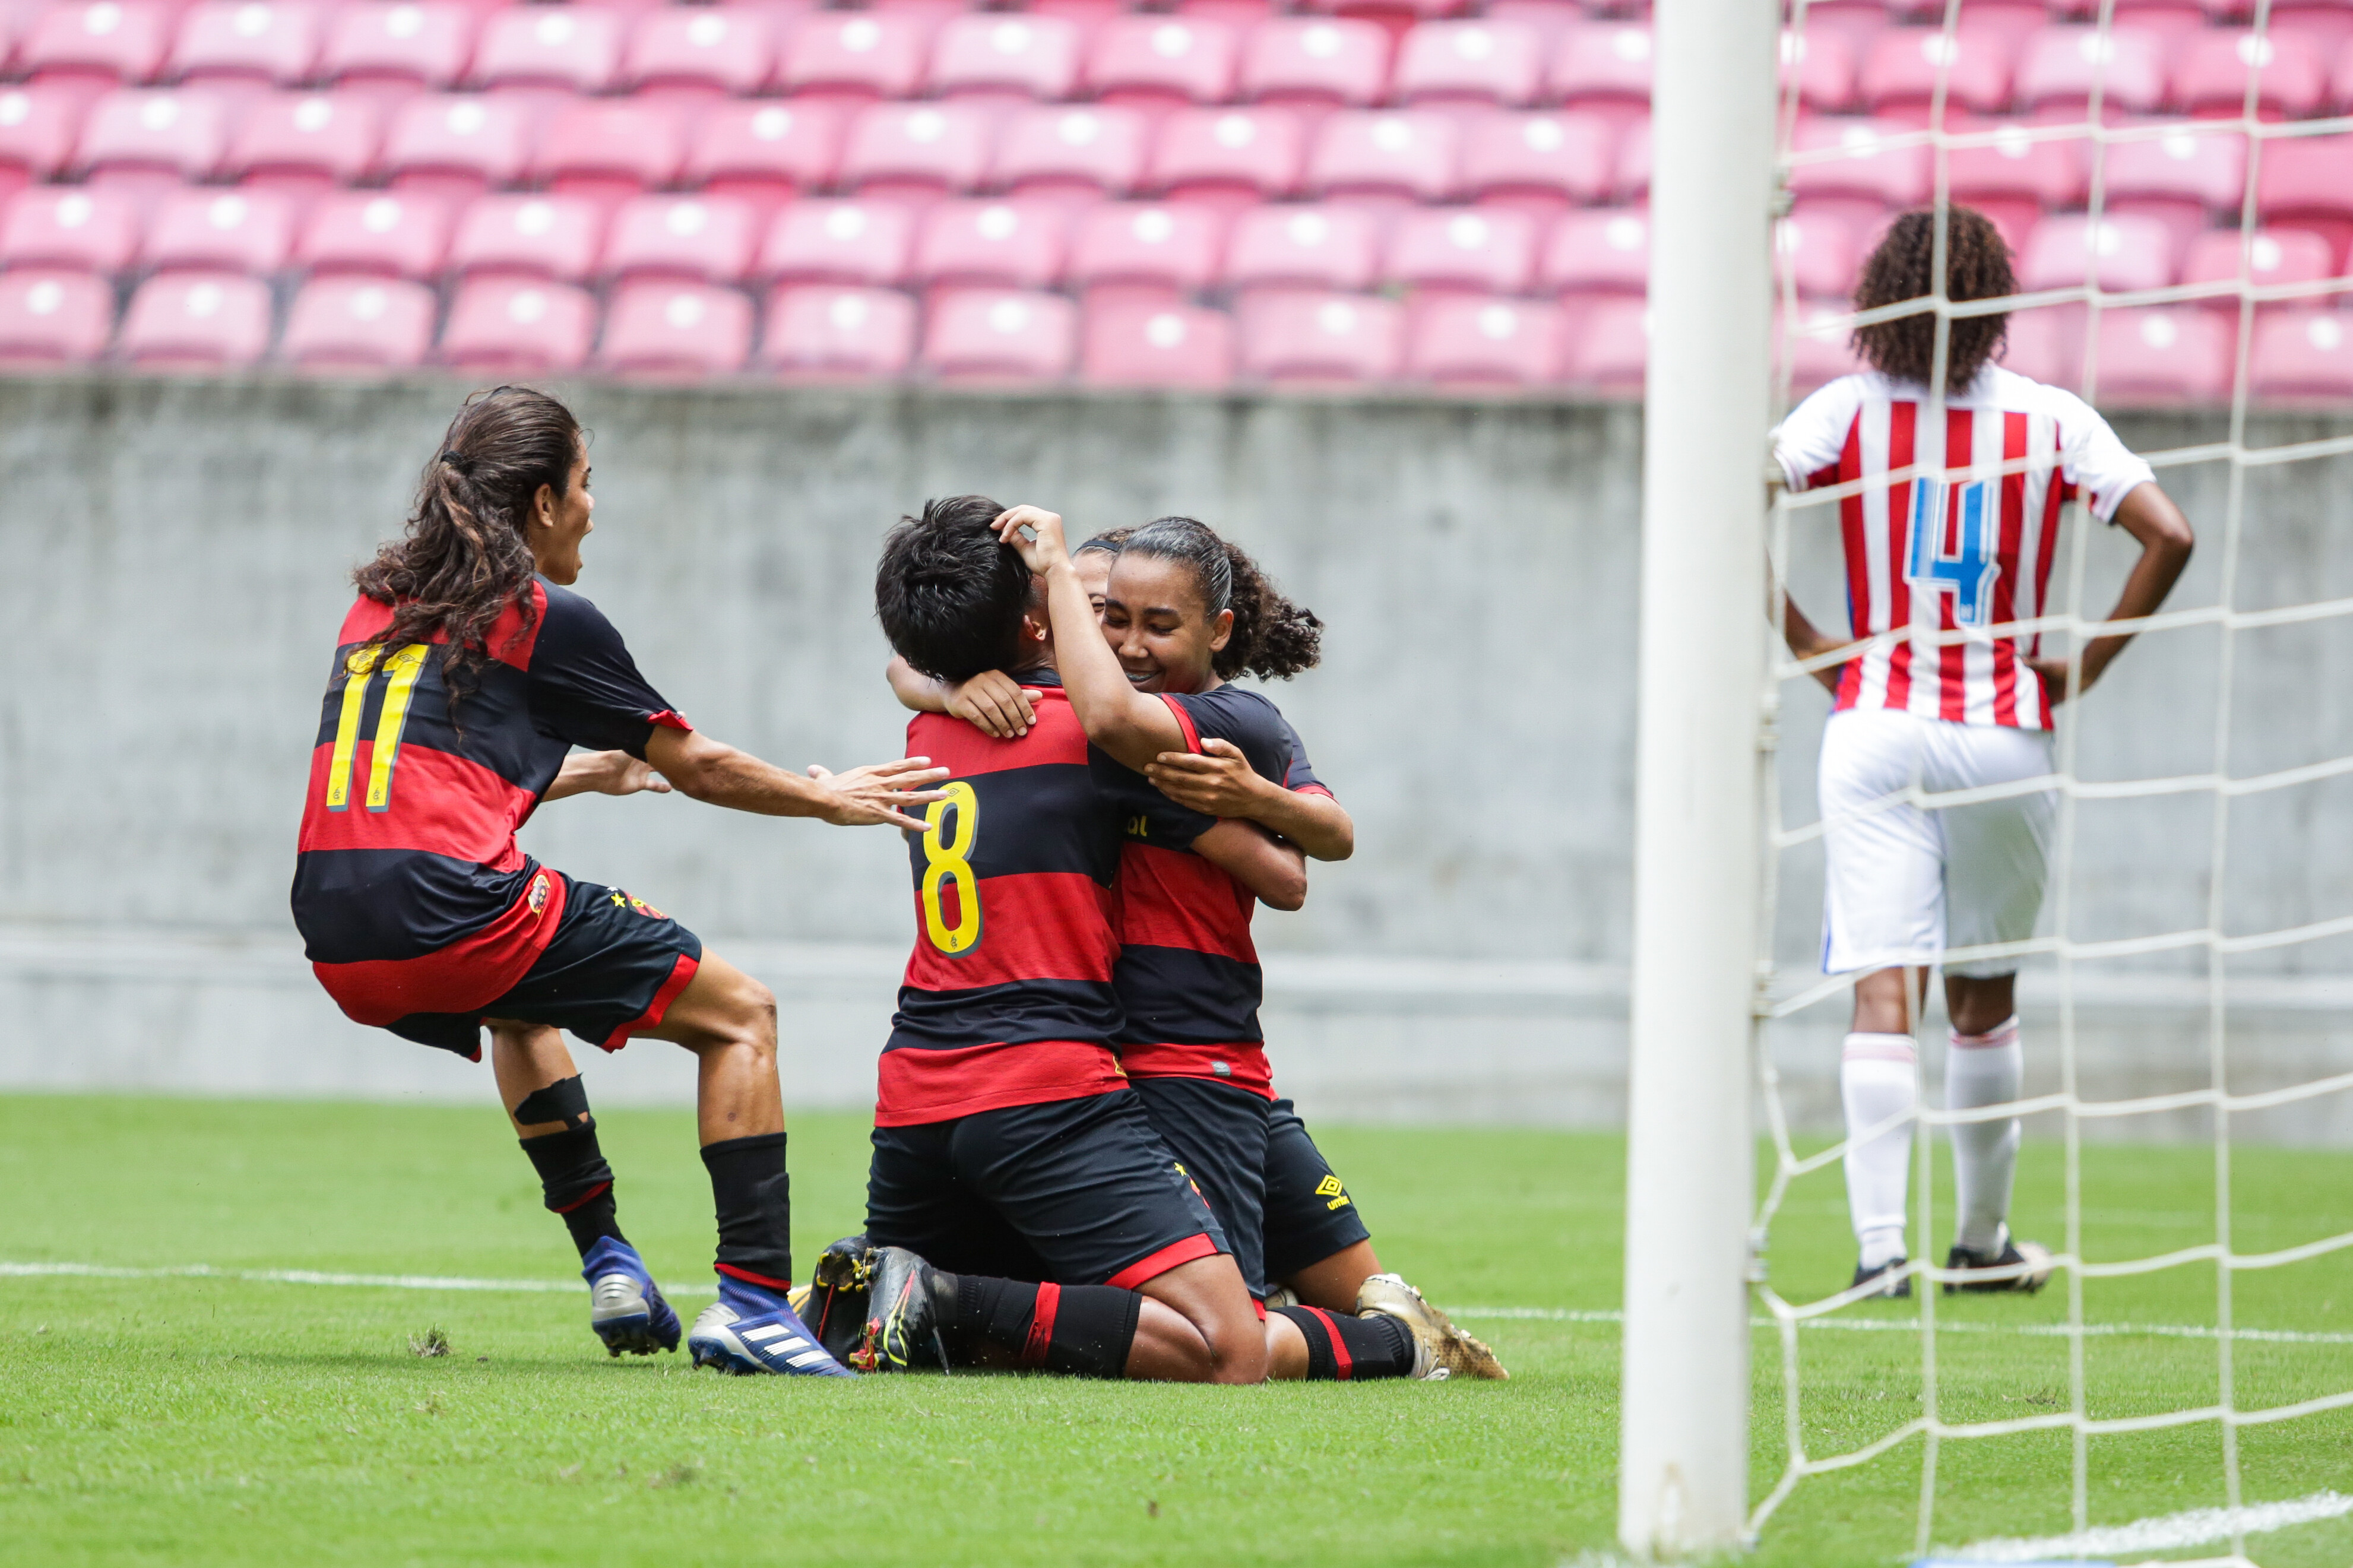 Recife vai sediar as finais do Campeonato Brasileiro Absoluto e Feminino de  Xadrez - Eufemea